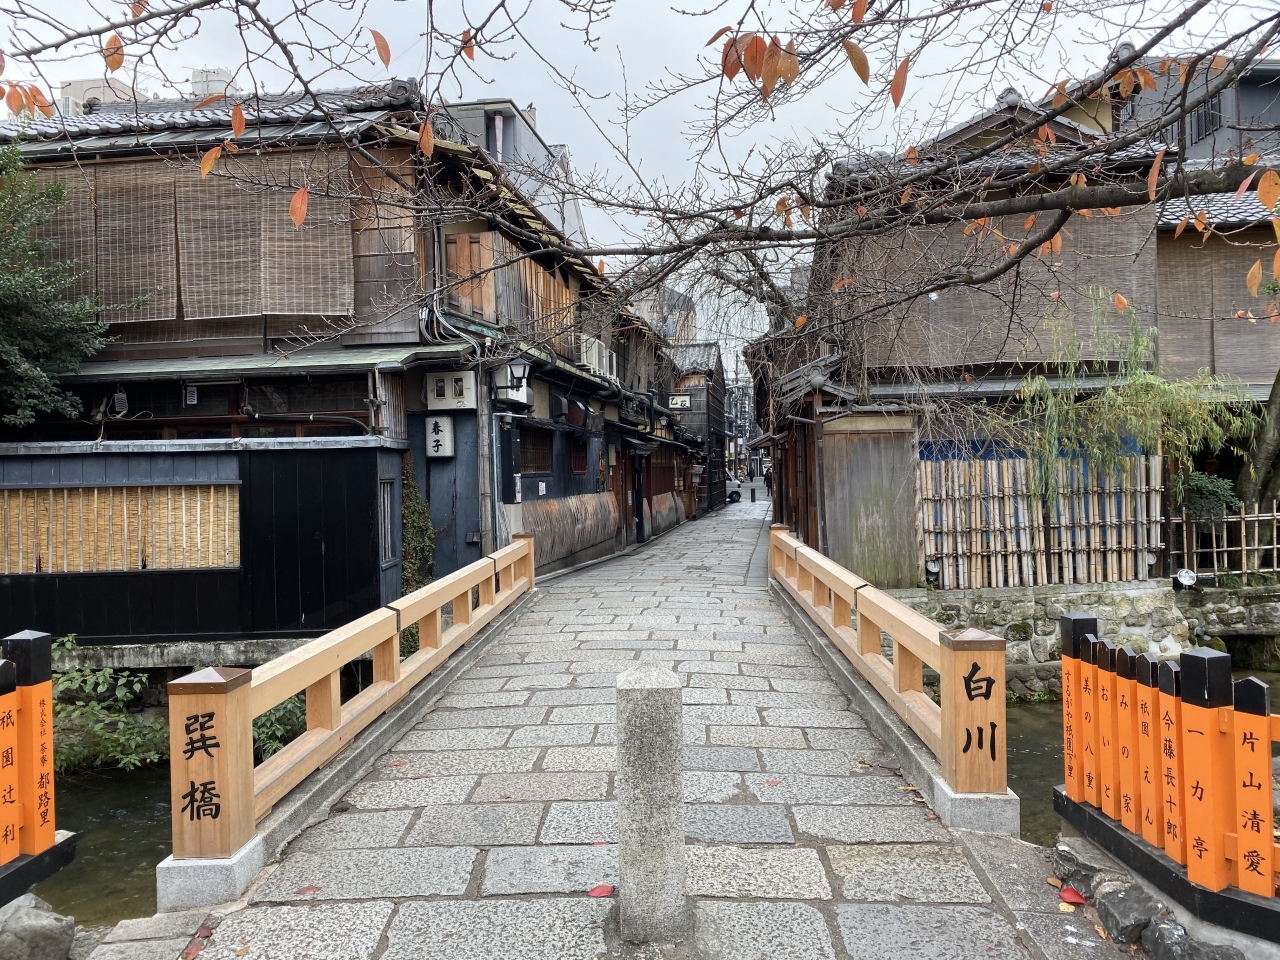 奈良マラソン19に行く前に 京都祇園を散策しました 東山 祇園 北白川 京都 の旅行記 ブログ By どーもくんさん フォートラベル